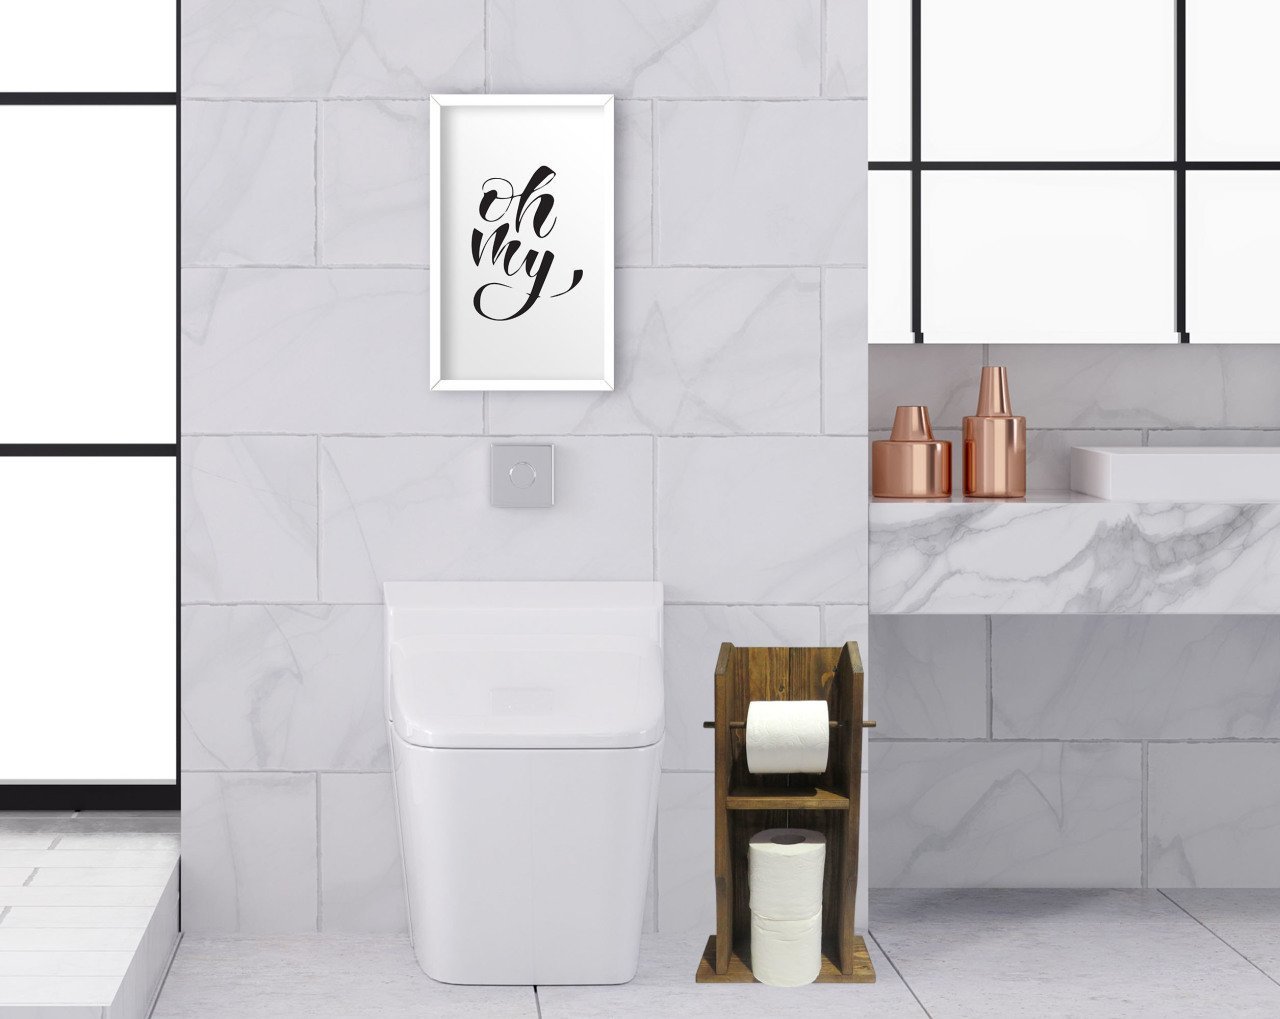 BK Home Doğal Masif Ahşap Tuvalet Kağıtlığı ve Dekoratif Ahşap Beyaz Çerçeveli Tablo Seti-5